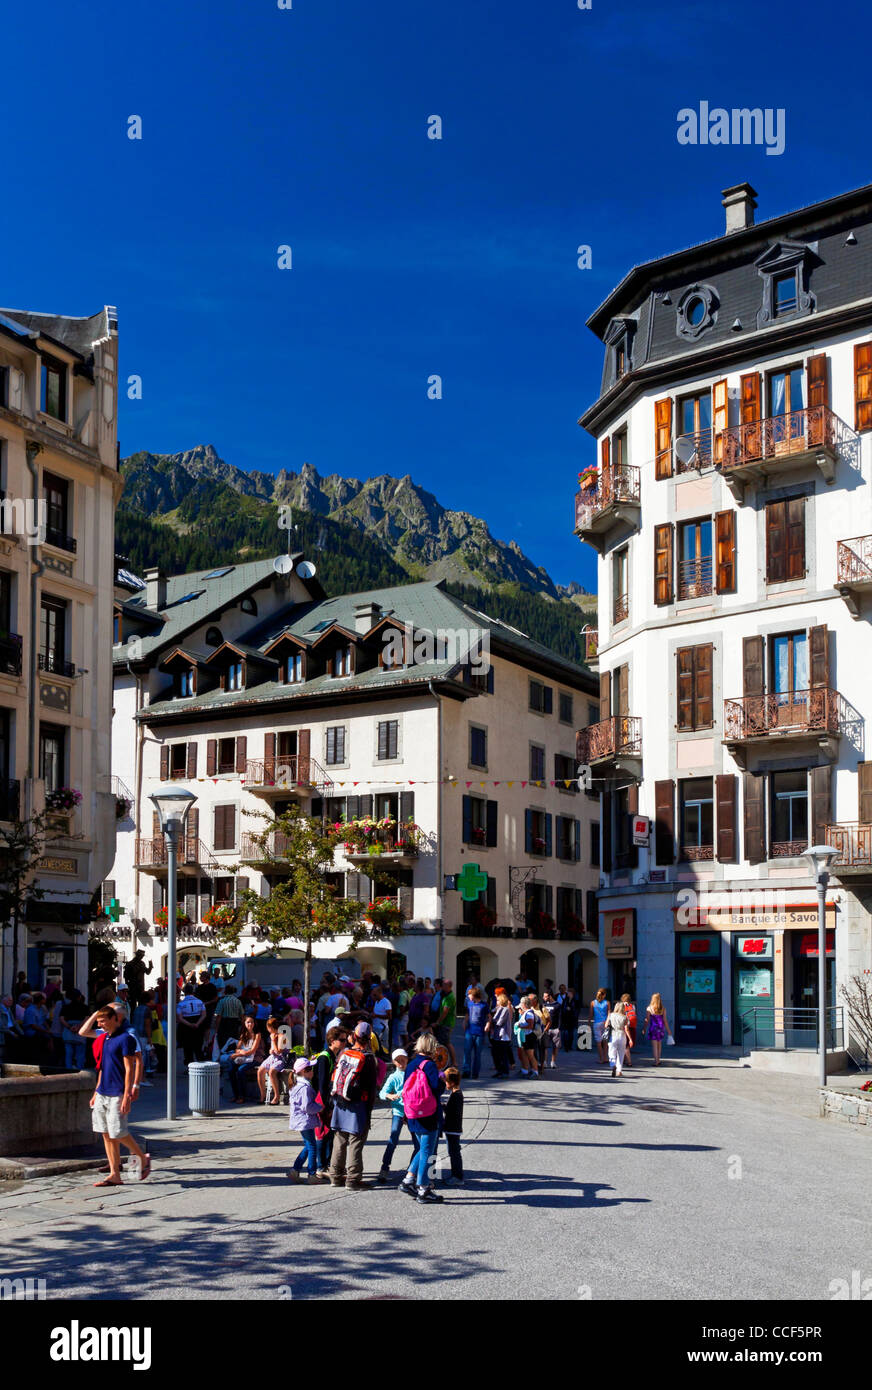 Das Zentrum von Chamonix Mont Blanc Bergsteigen Hauptstadt Frankreichs in der Region Savoie der französischen Alpen Stockfoto